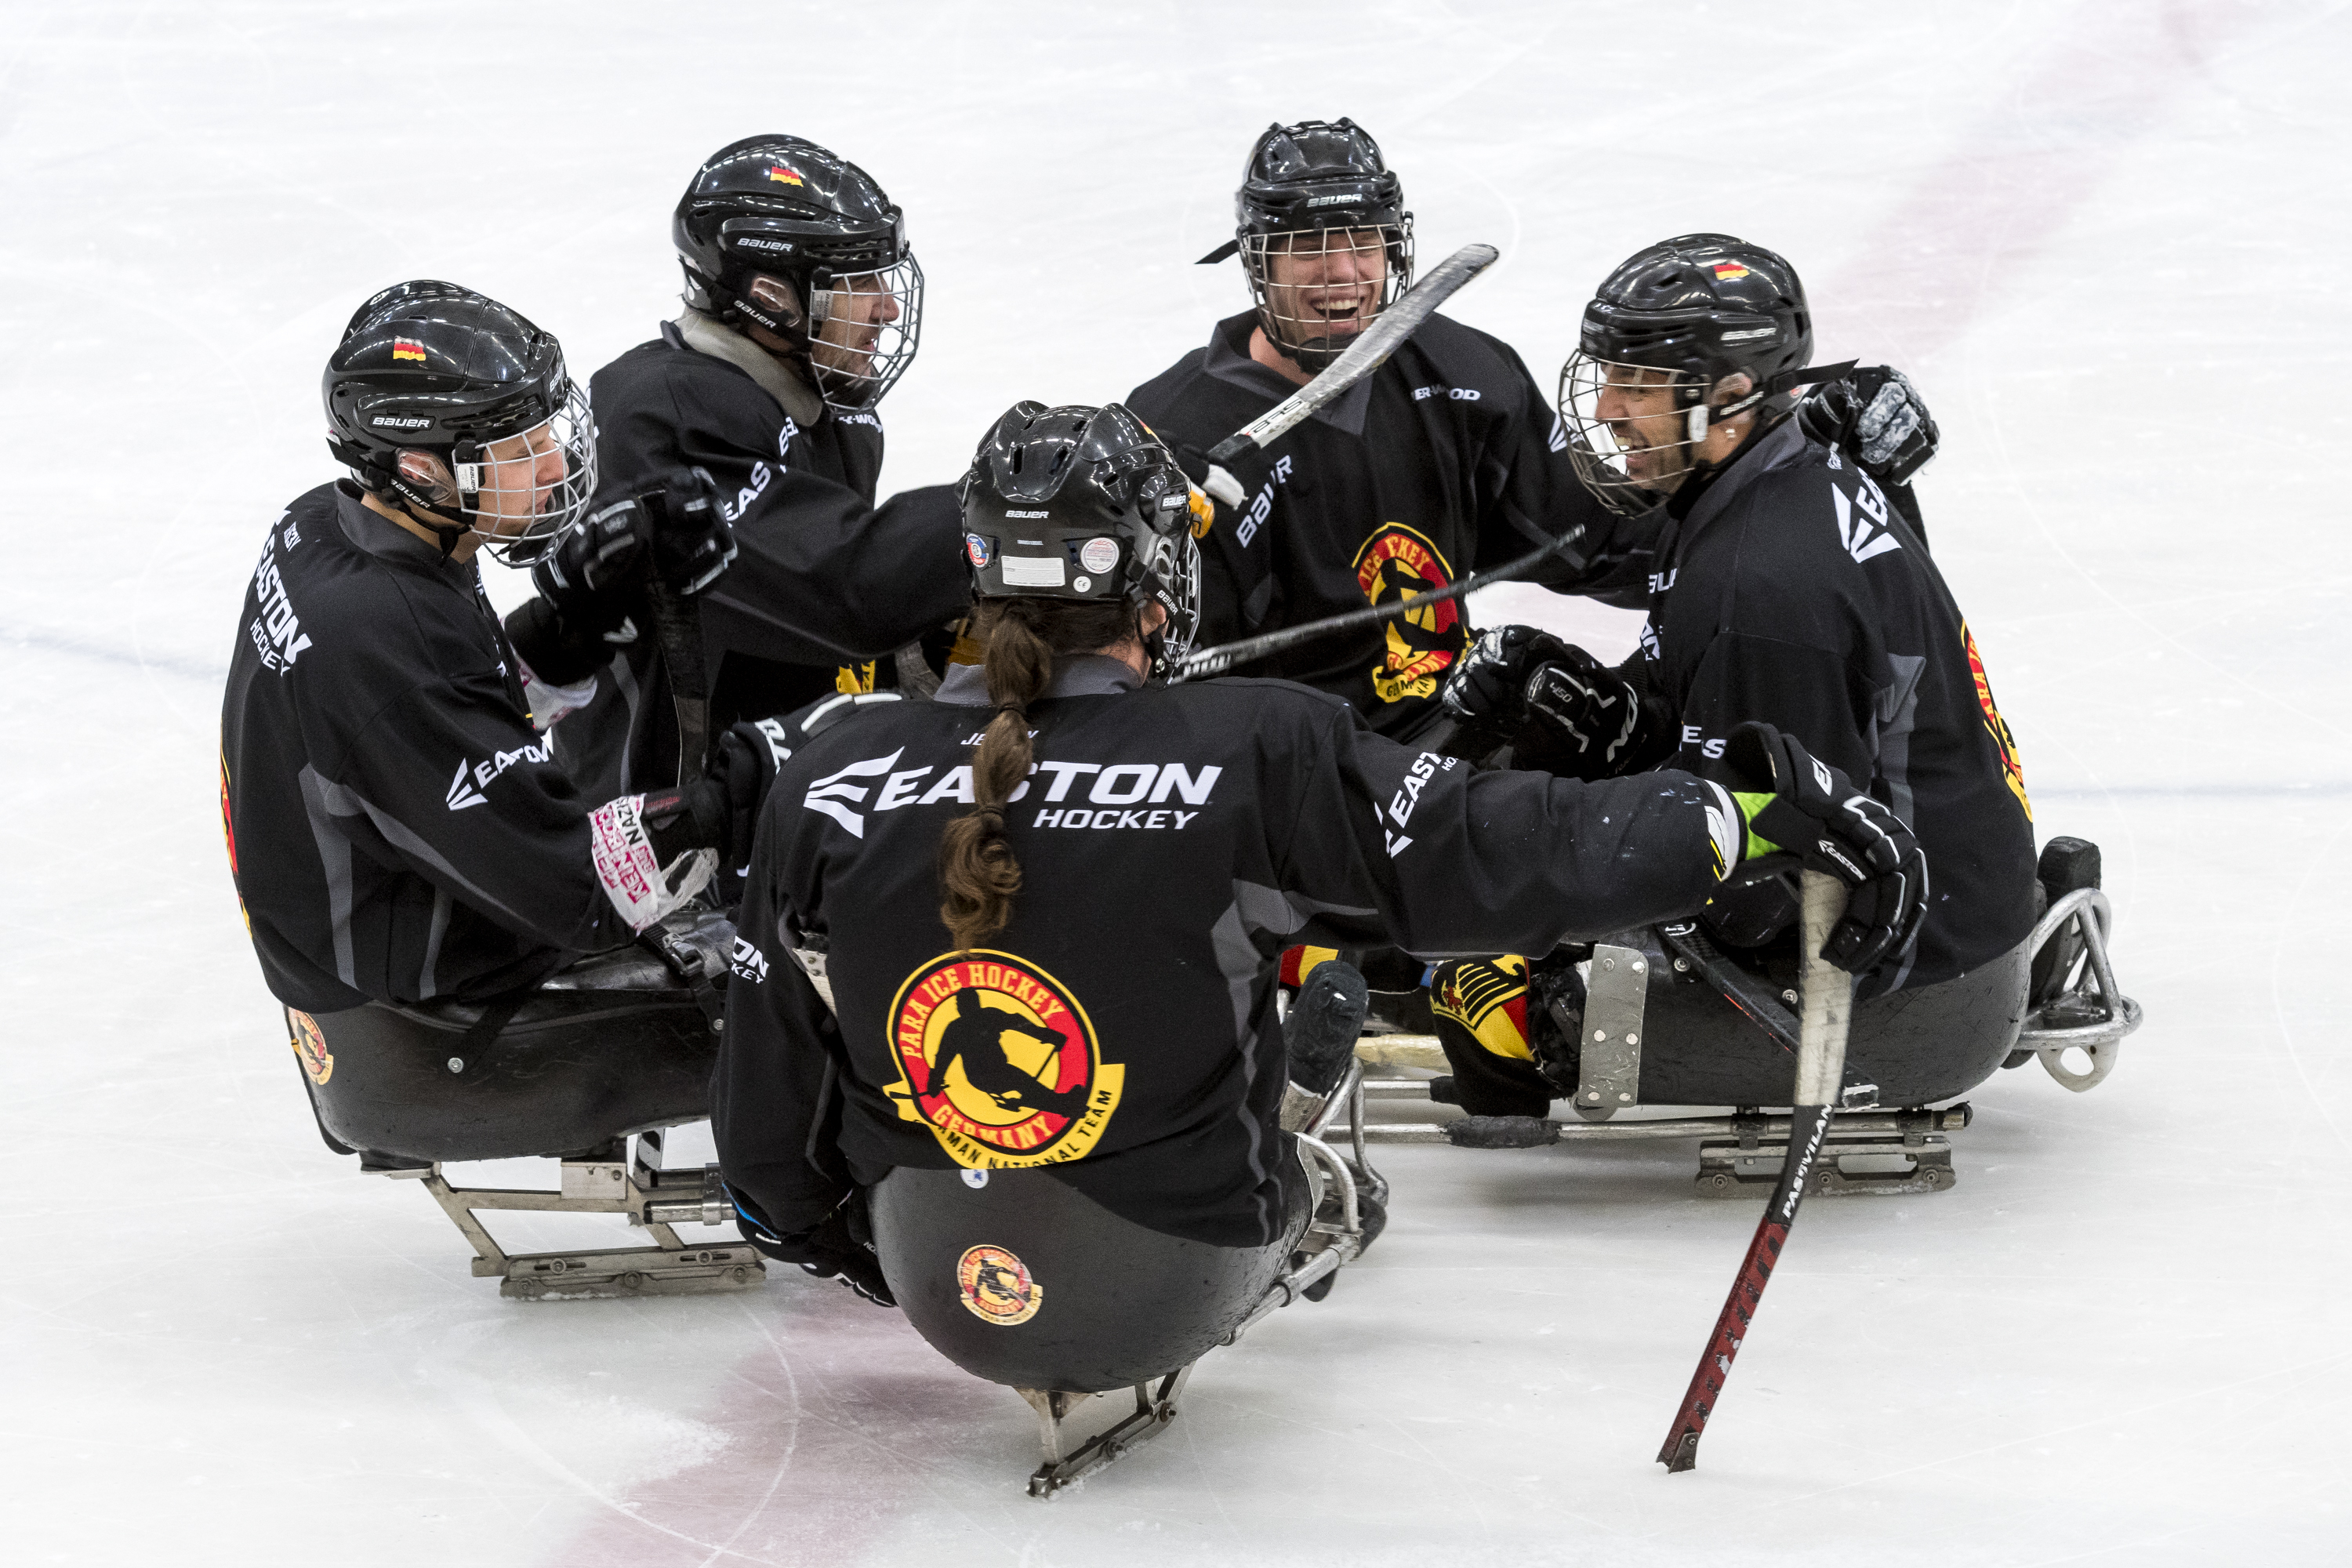 Fünf lachende Para Eishockey-Spieler der deutschen Mannschaft auf dem Eis | Foto: Ralf Kuckuck / DBS